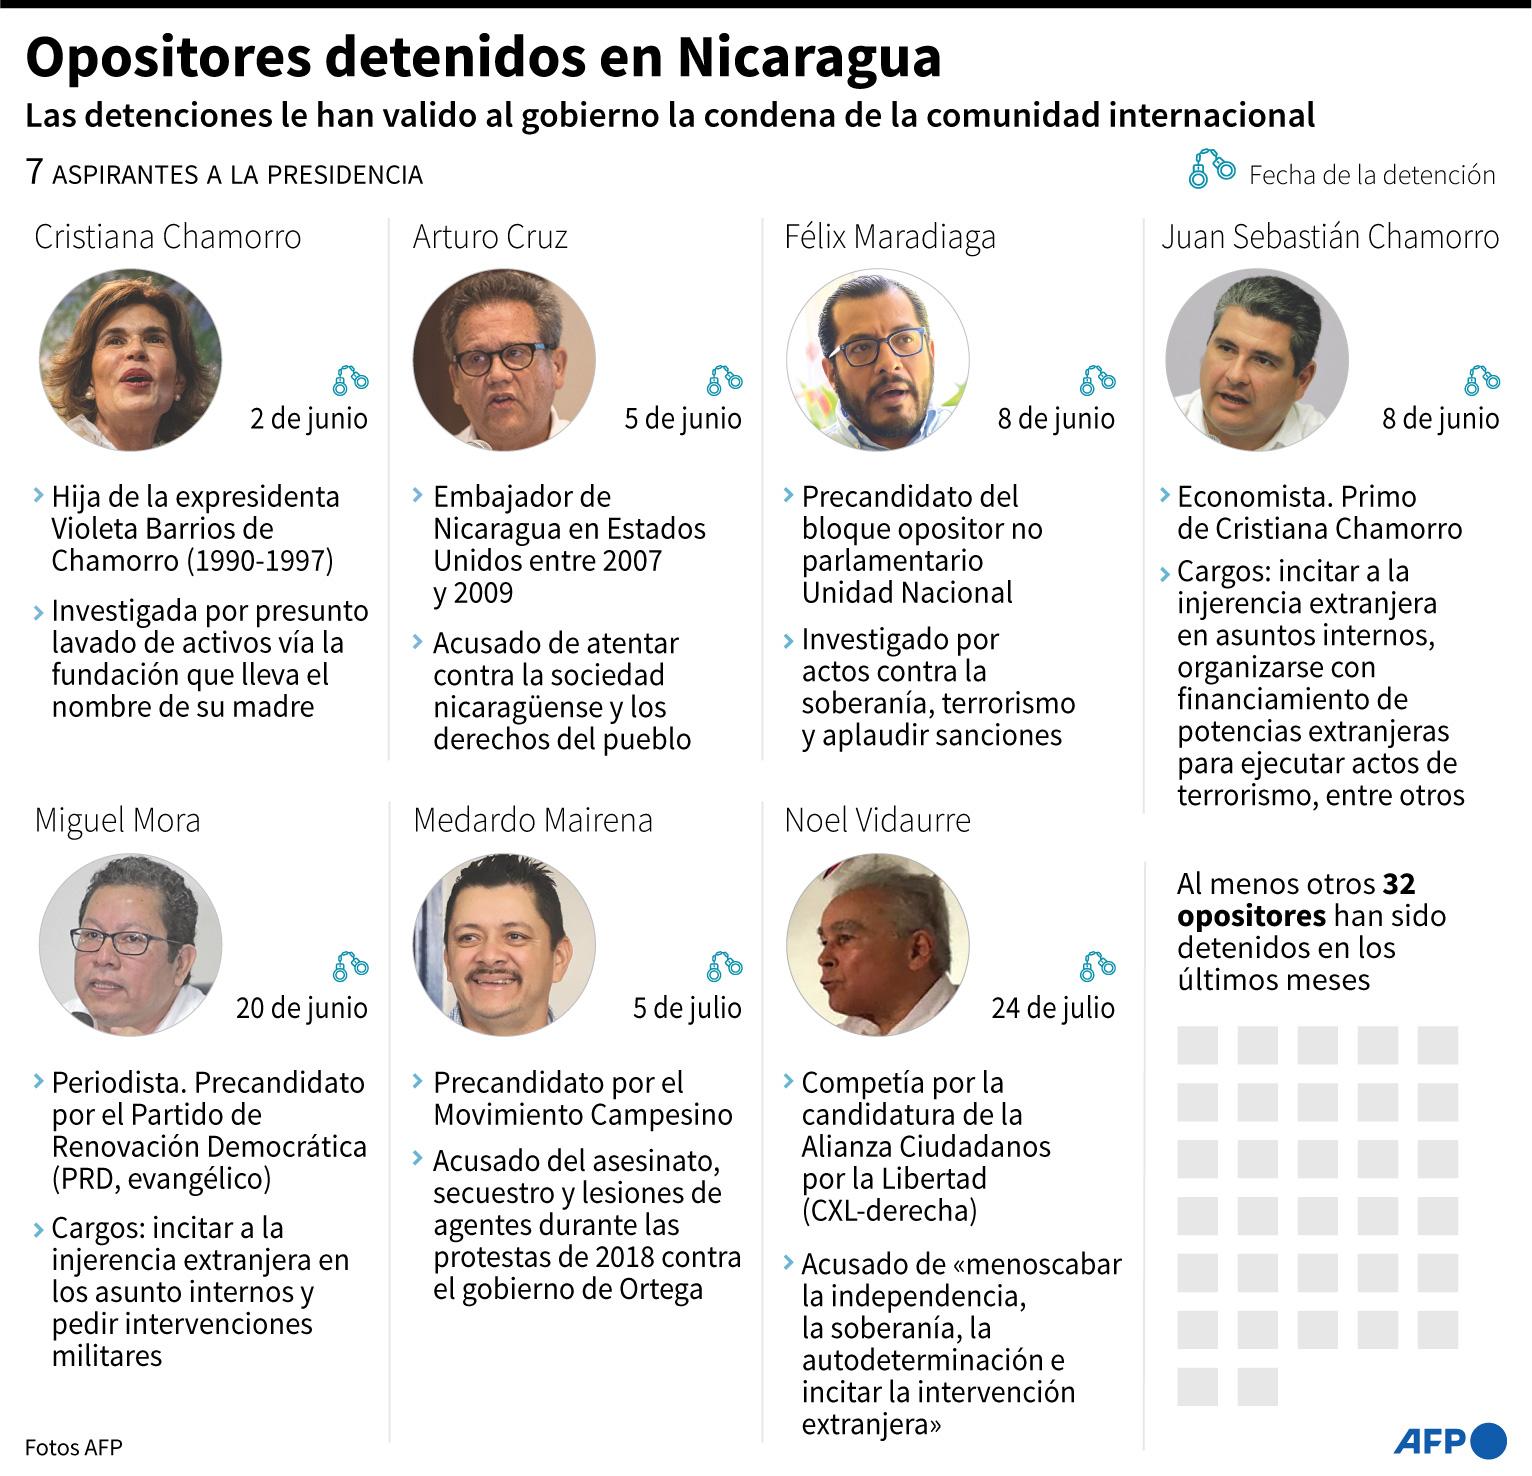 $!Ficha sobre los 7 aspirantes a la presidencia detenidos en Nicaragua entre junio y julio de 2021 - AFP / AFP